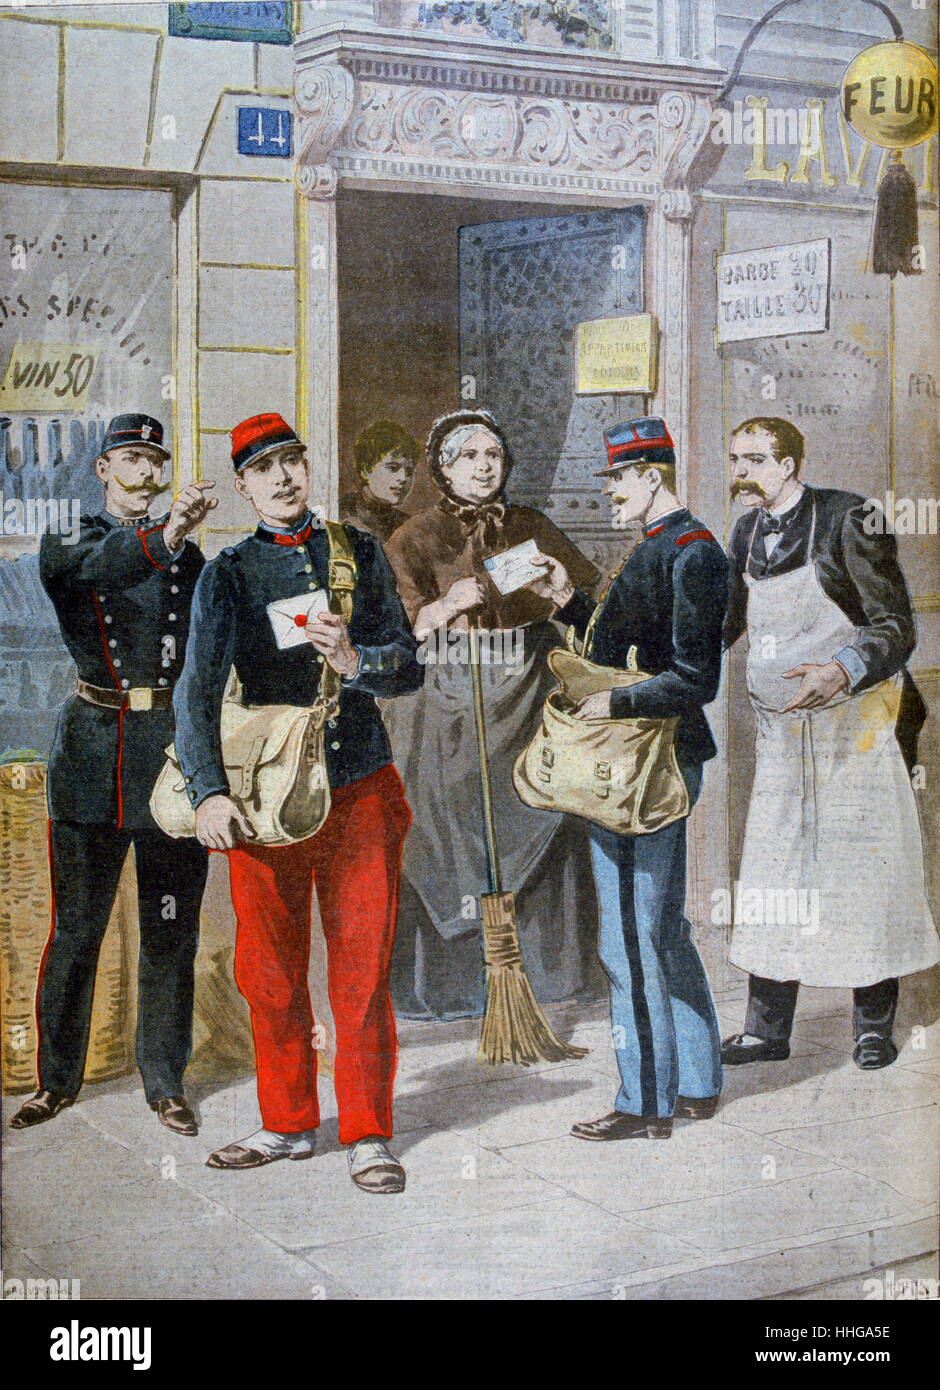 Les postiers en grève, Paris, France 1899 Banque D'Images